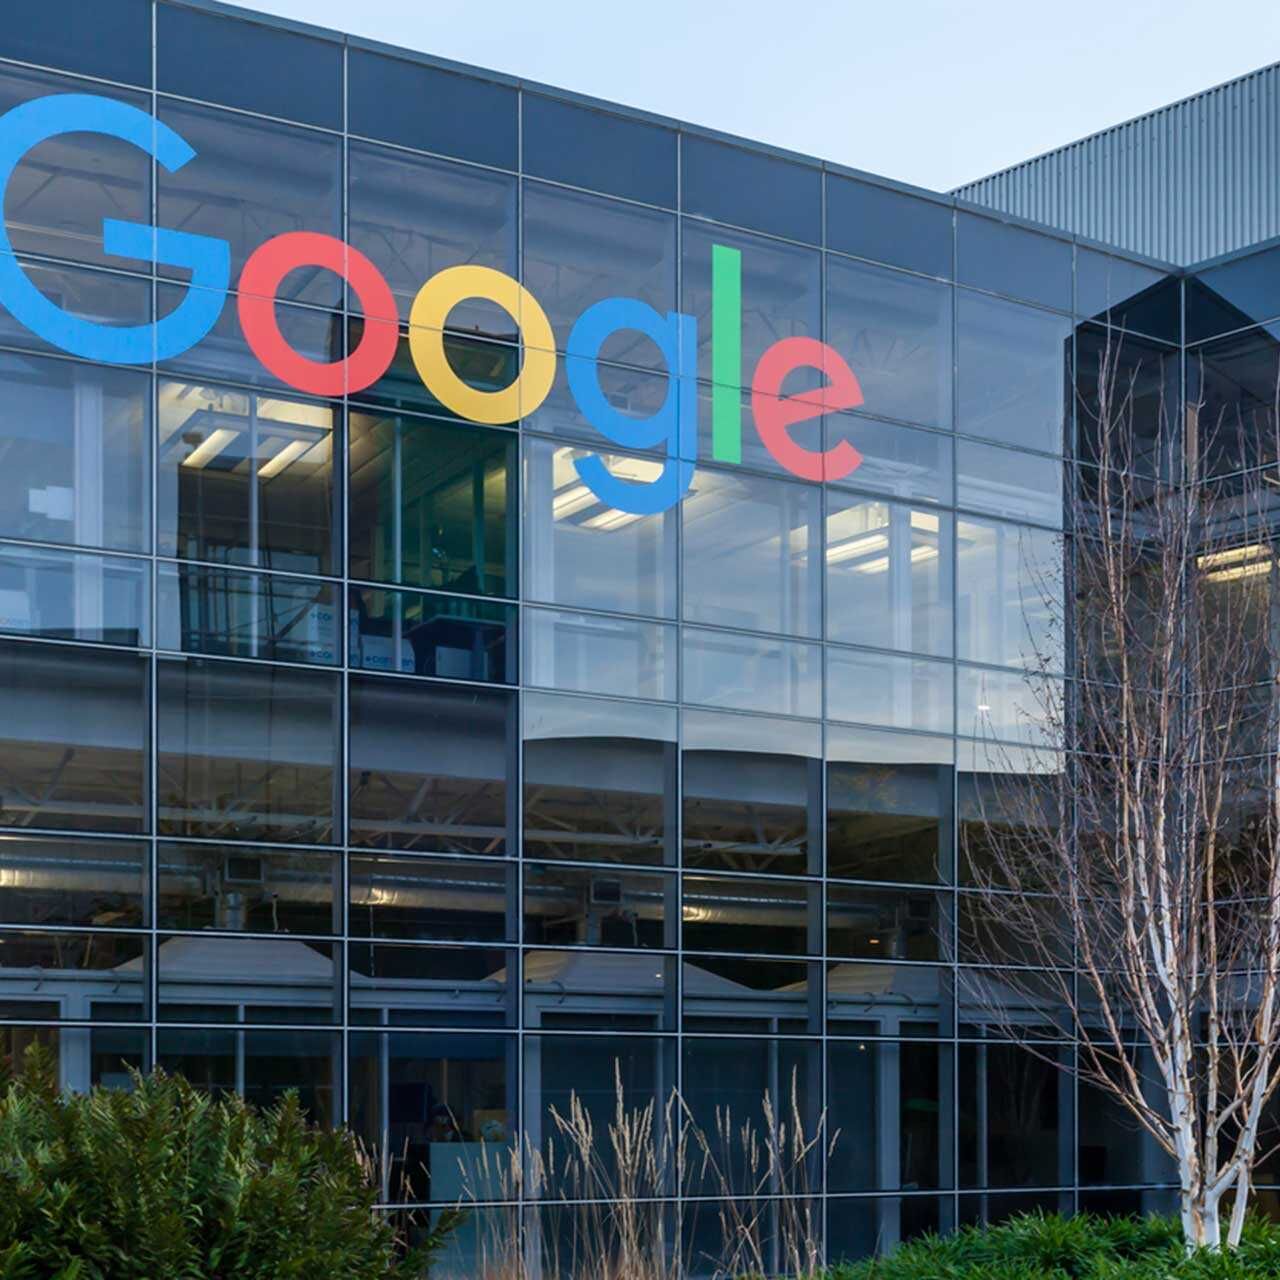 Google è un'azienda USA che offre servizi online, con quartier generale a Mountain View in California, nel cosiddetto Googleplex